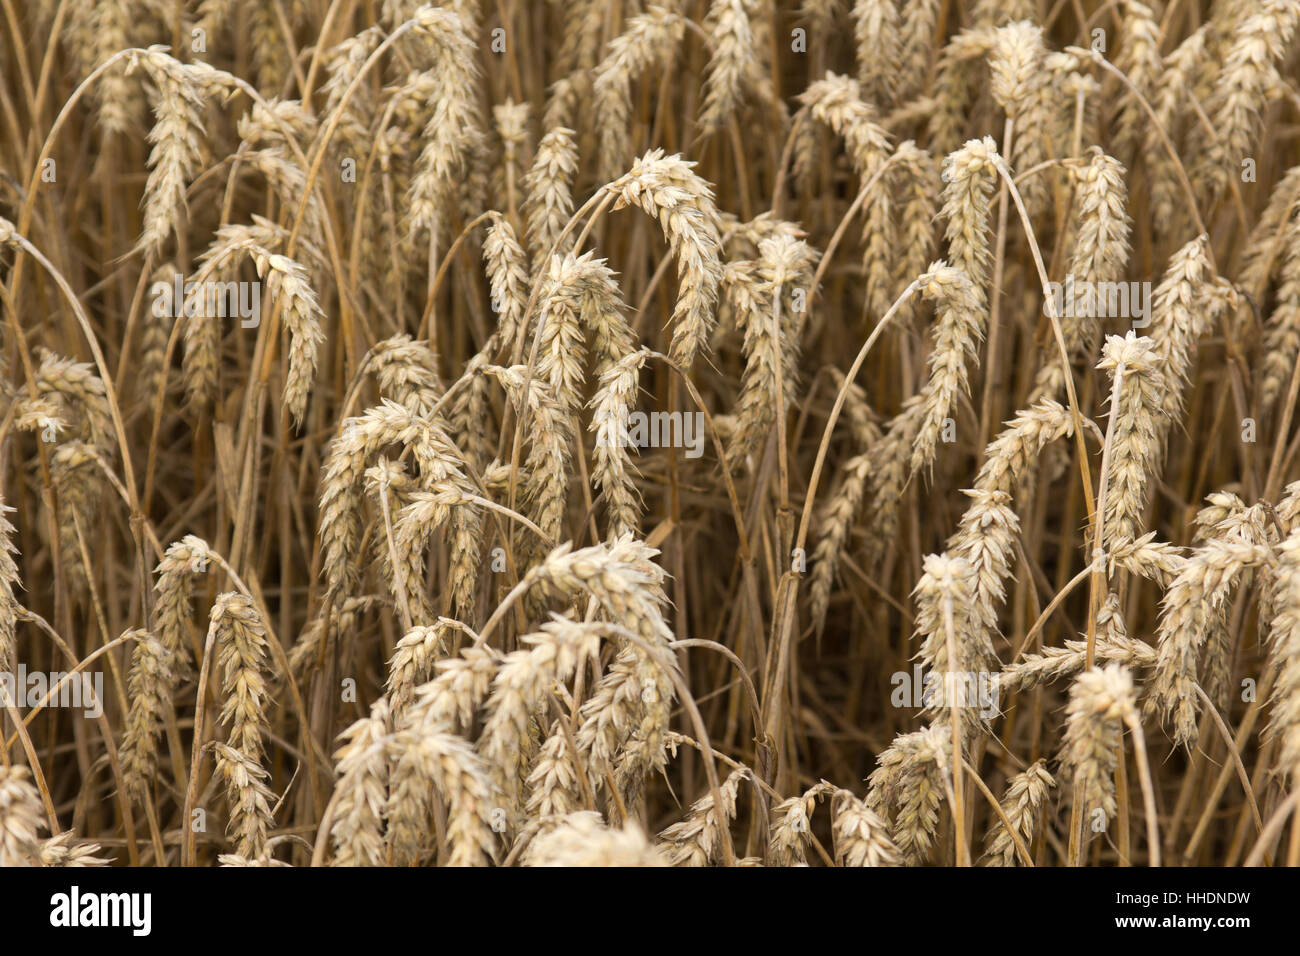 field, acre, corn field, ear, grain field, barley, barley corn, grain ...